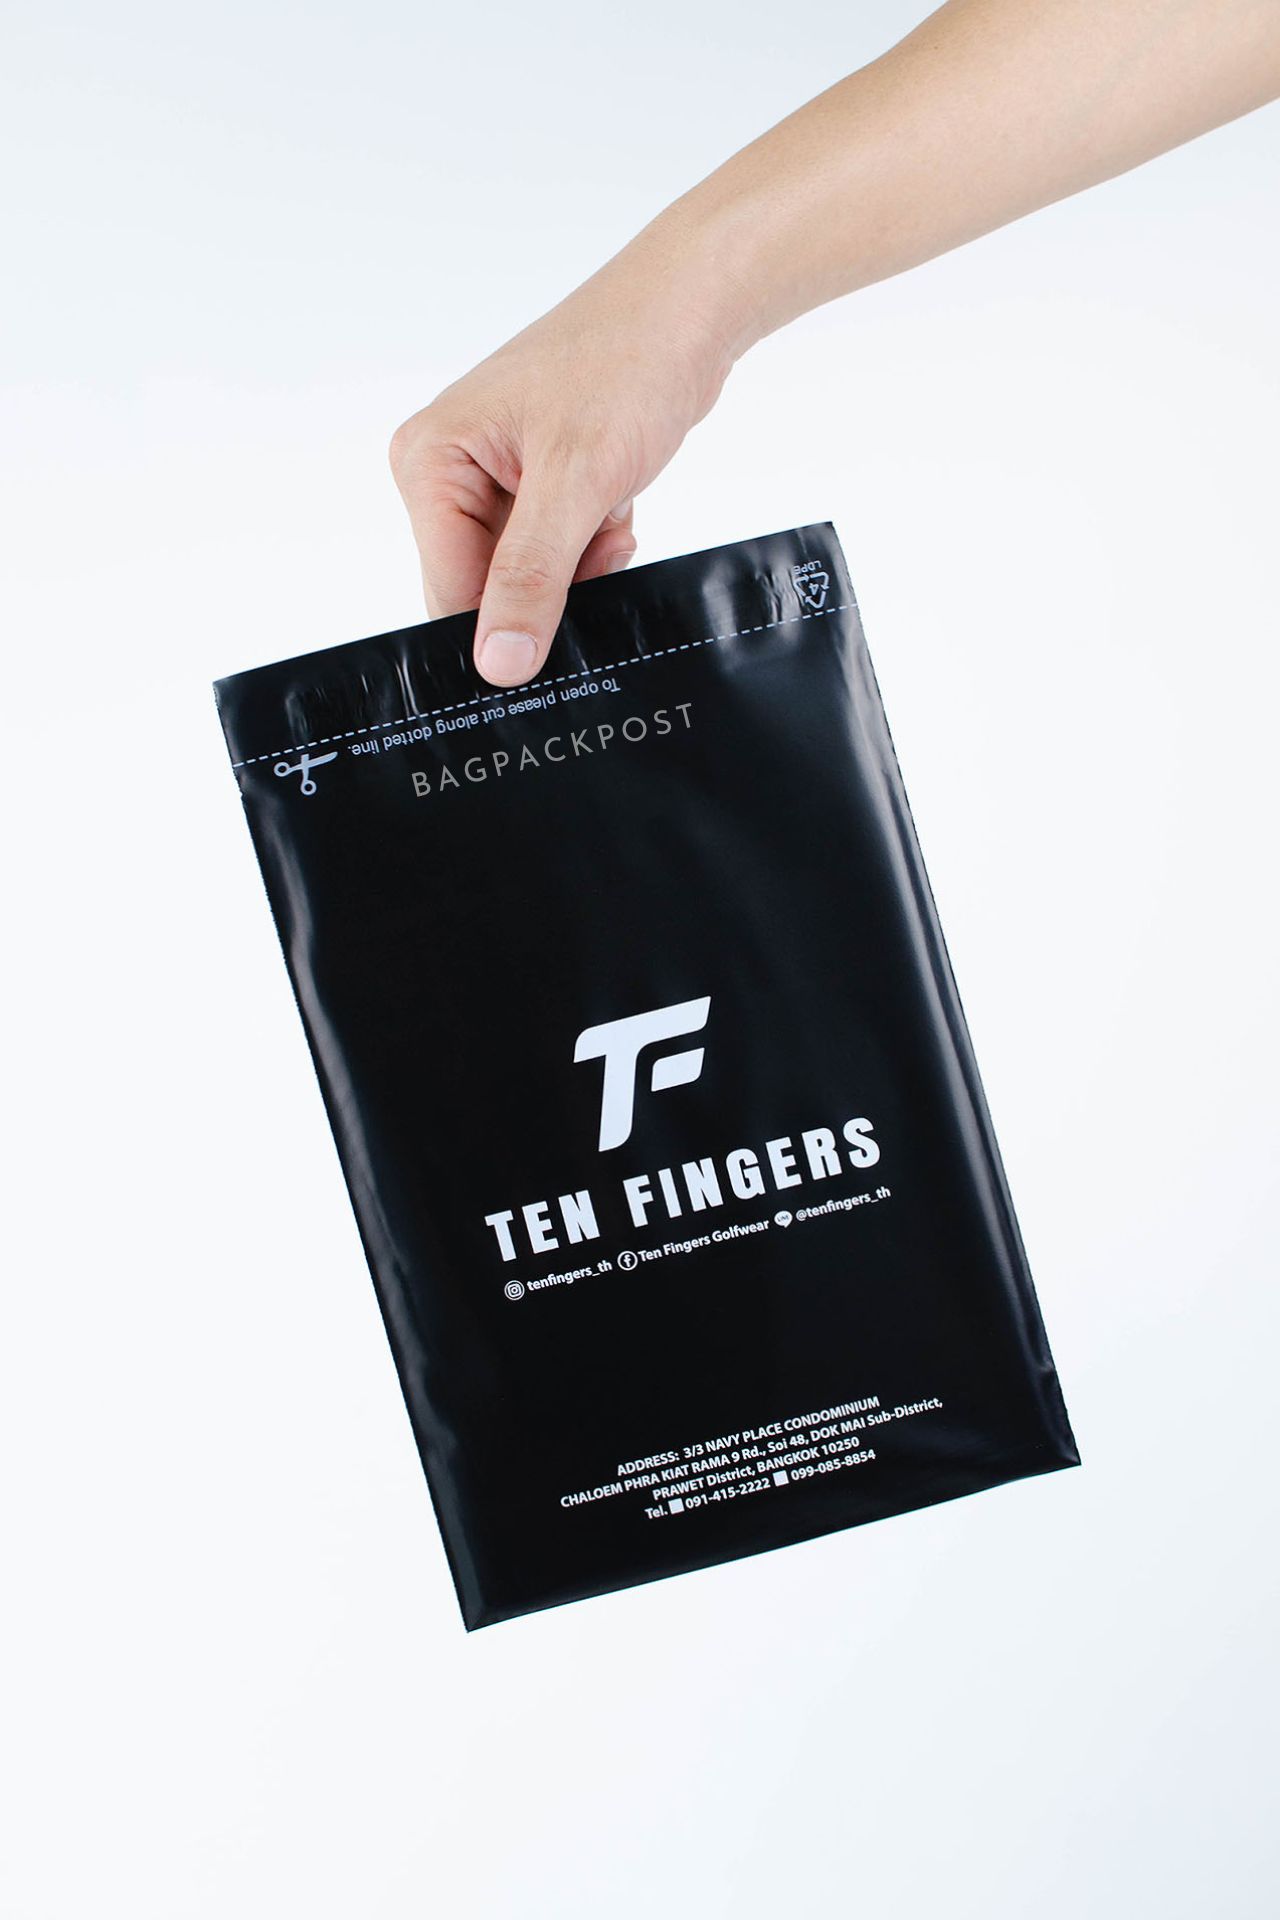 ผลิตถุงไปรษณีย์ ถุงพัสดุ ซองไปรษณีย์พิมพ์ลาย Ten Fingers ซองไปรษณีย์สีดำ ถุงไปรษณีย์พิมพ์ลาย 1 BagPackPost